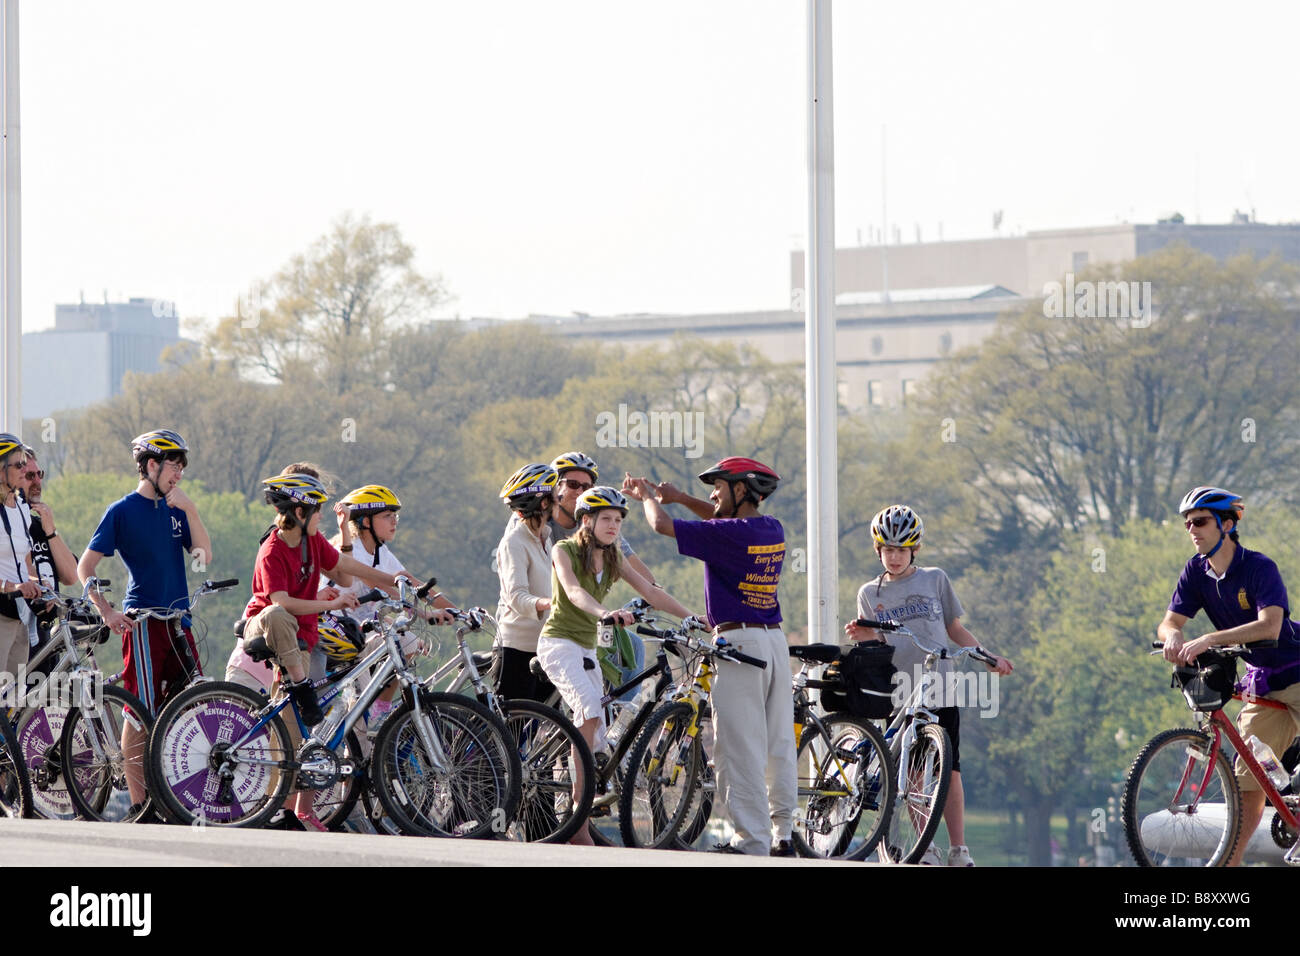 Les touristes sur le cyclotourisme les monuments de Washington DC avec les sites de vélo. Sous le Monument de Washington. Banque D'Images